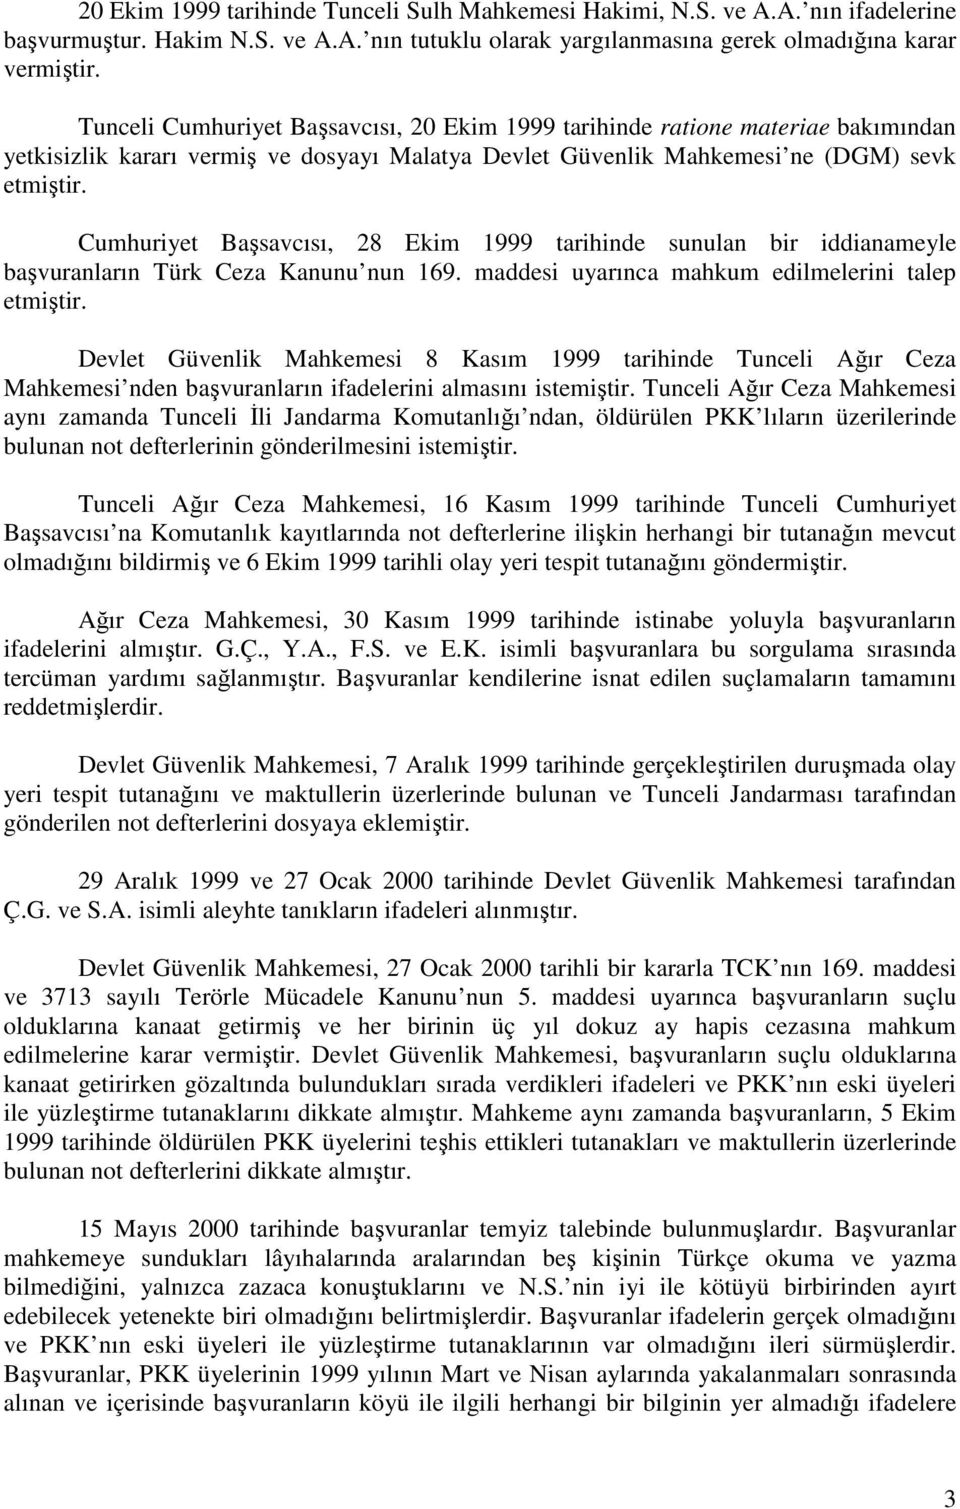 Cumhuriyet Başsavcısı, 28 Ekim 1999 tarihinde sunulan bir iddianameyle başvuranların Türk Ceza Kanunu nun 169. maddesi uyarınca mahkum edilmelerini talep etmiştir.